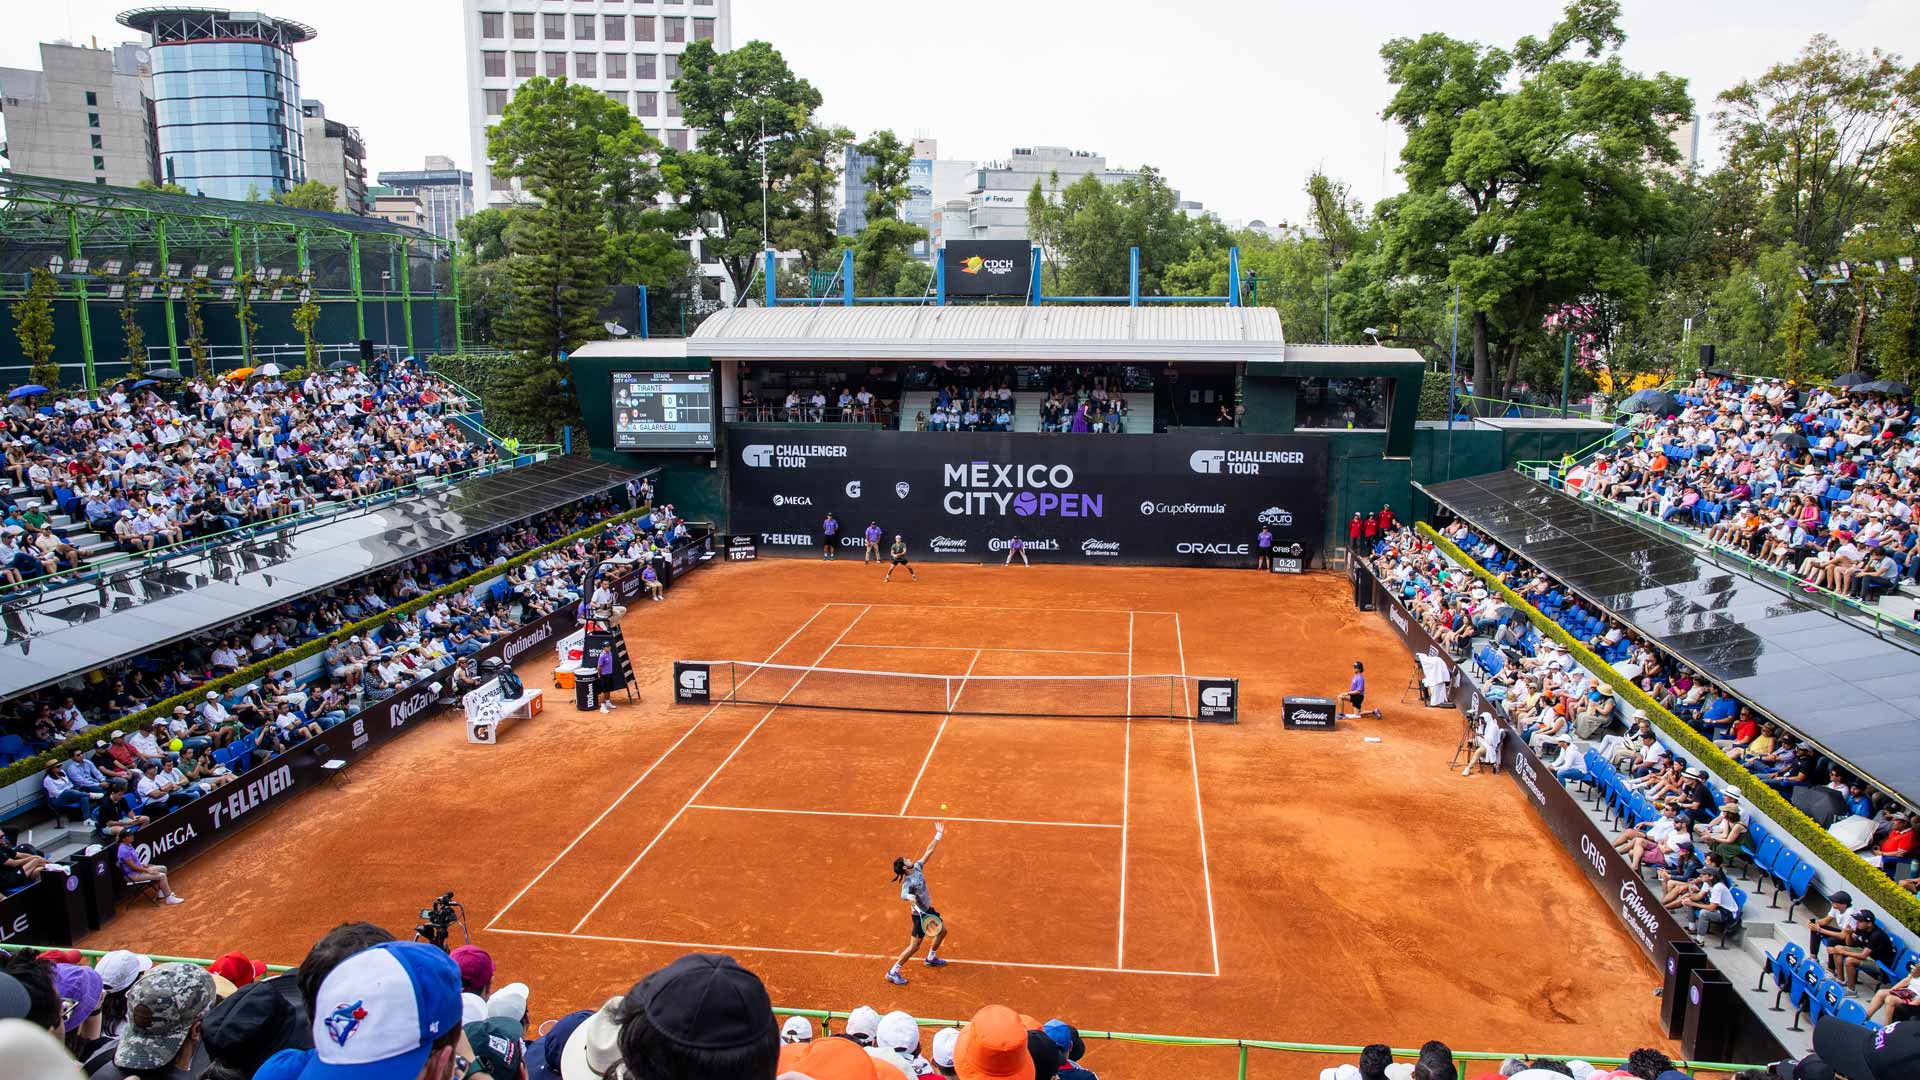 Mexico City Open